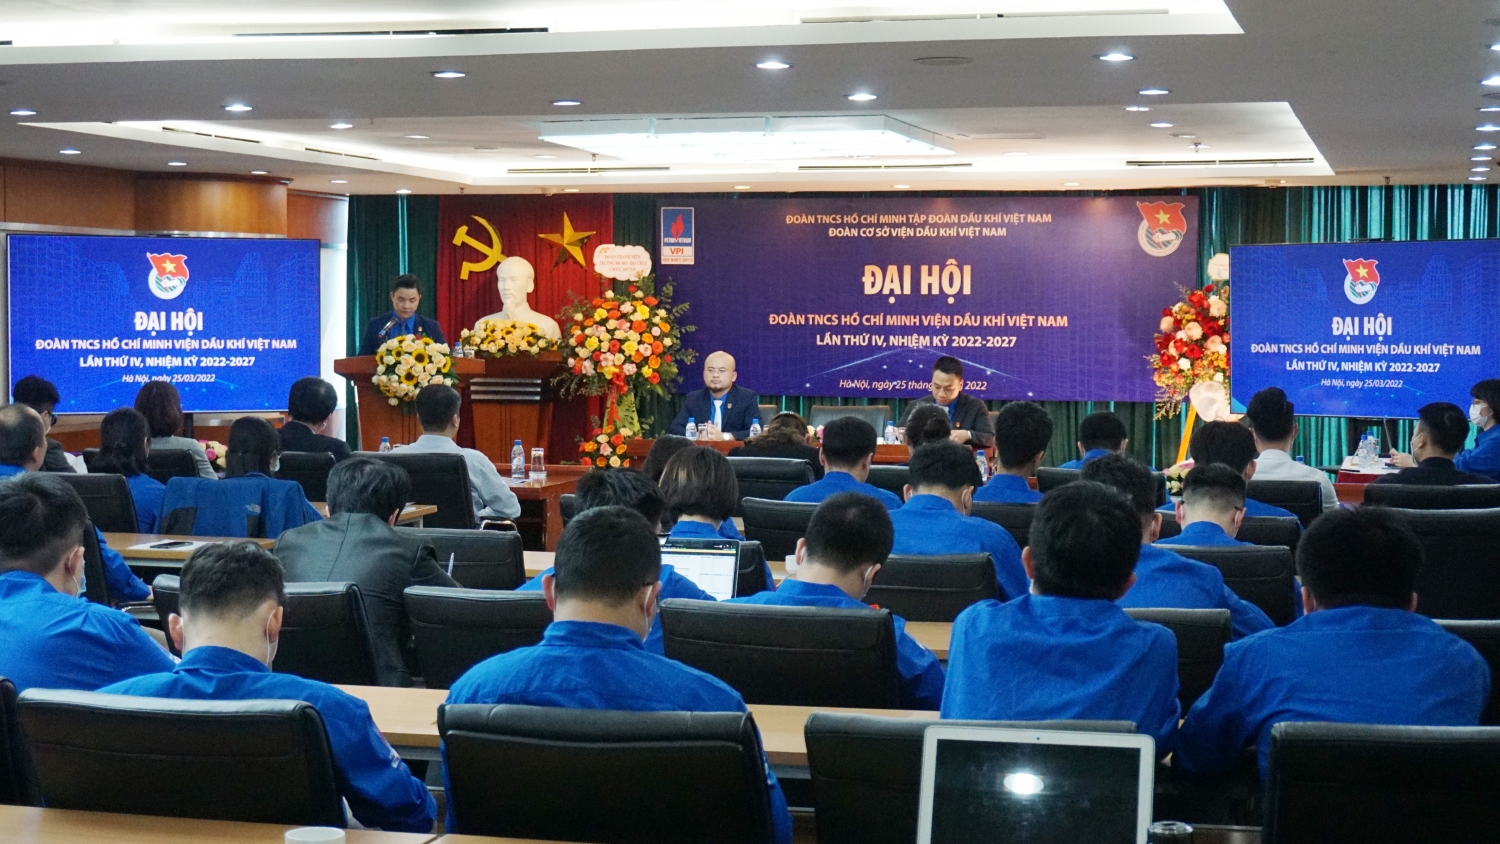 Tuổi trẻ Viện Dầu khí Việt Nam - Đoàn kết, đổi mới sáng tạo, hiệu quả”